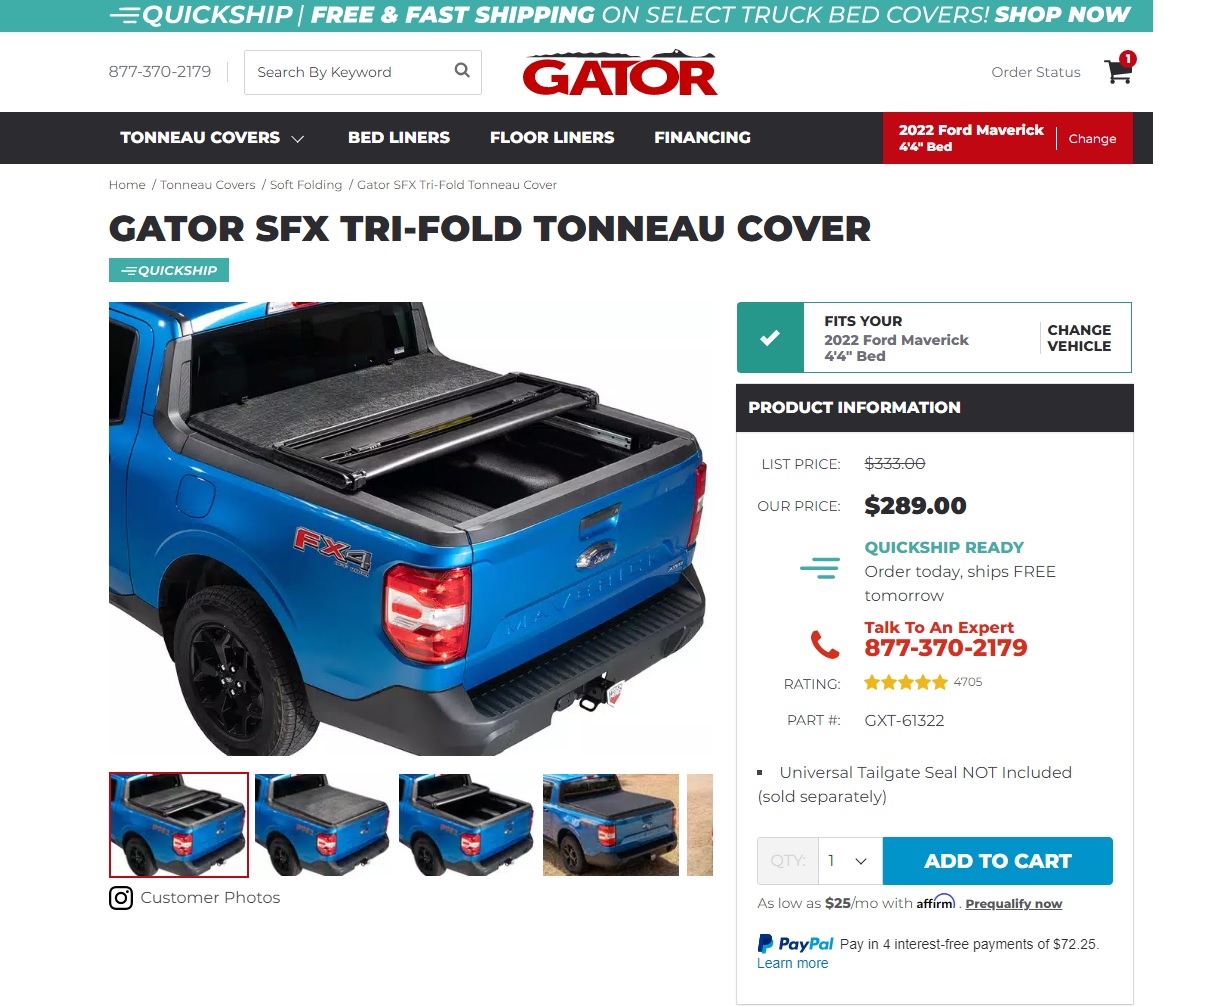 Ford Maverick Gator SFX tri-fold tonneau NIB cover in North Alabam Tonneau